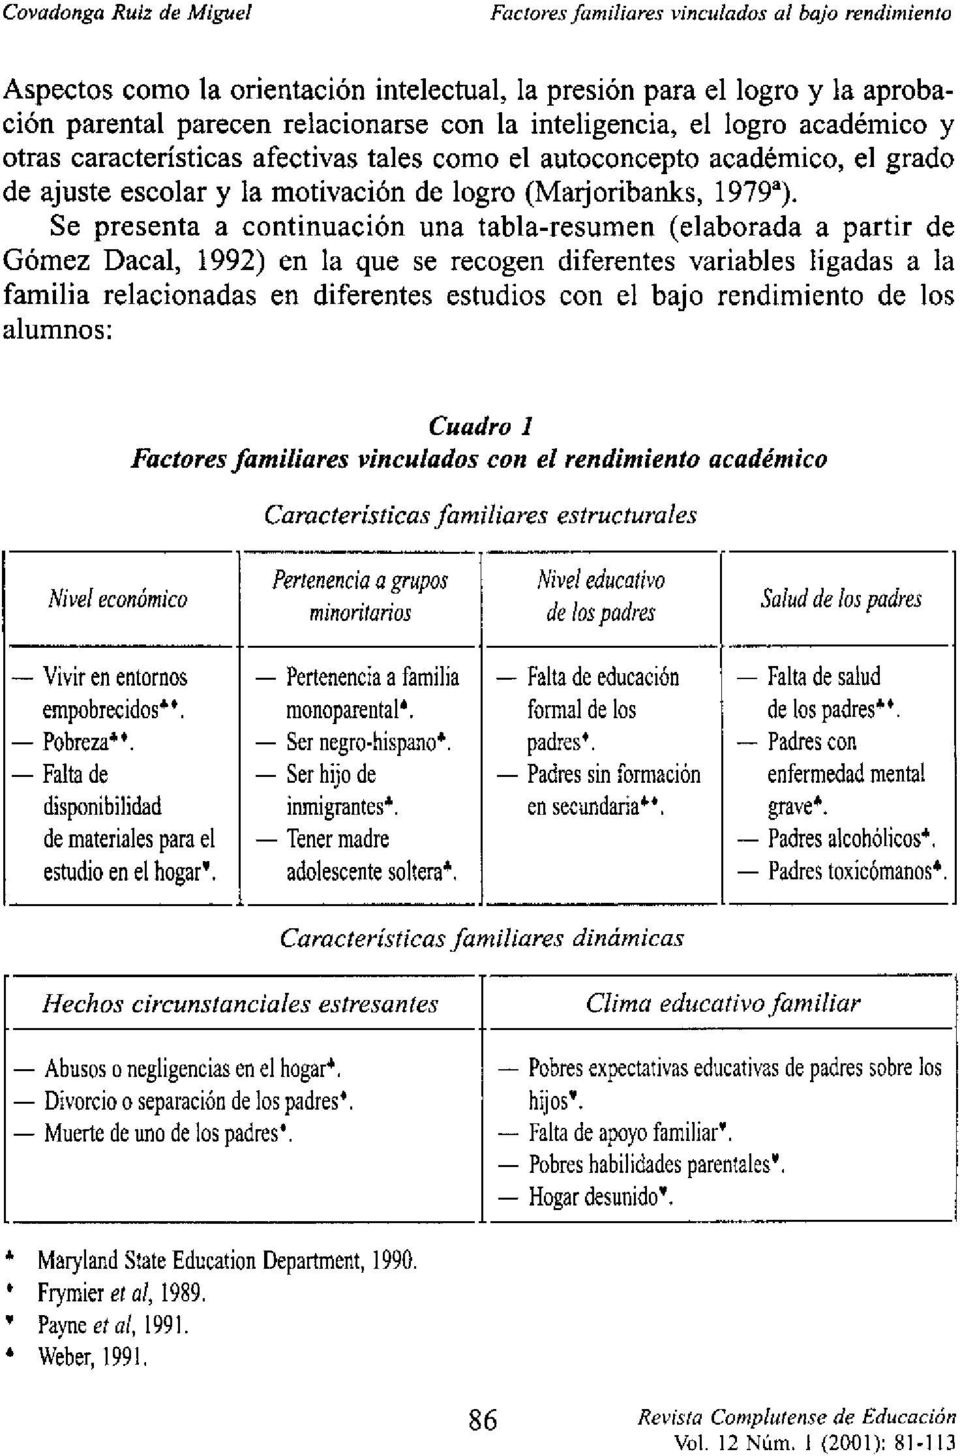 Se presenta a continuación una tabla-resumen (elaborada a partir de Gómez Dacal, 1992) en la que se recogen diferentes variables ligadas a la familia relacionadas en diferentes estudios con el bajo